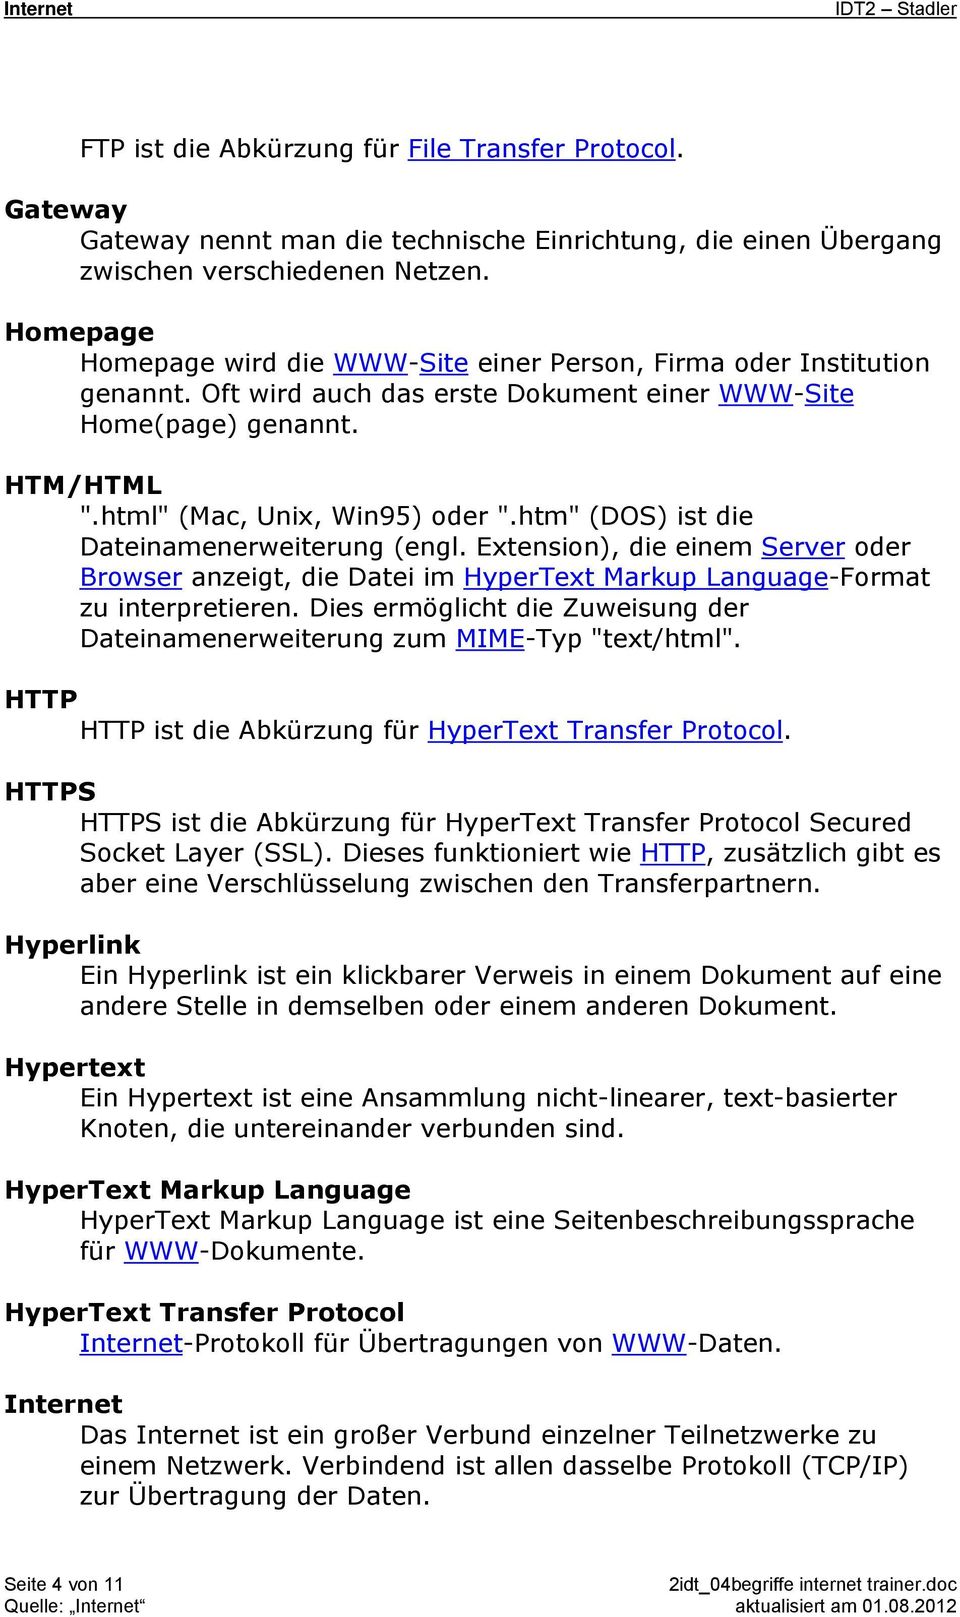 htm" (DOS) ist die Dateinamenerweiterung (engl. Extension), die einem Server oder Browser anzeigt, die Datei im HyperText Markup Language-Format zu interpretieren.